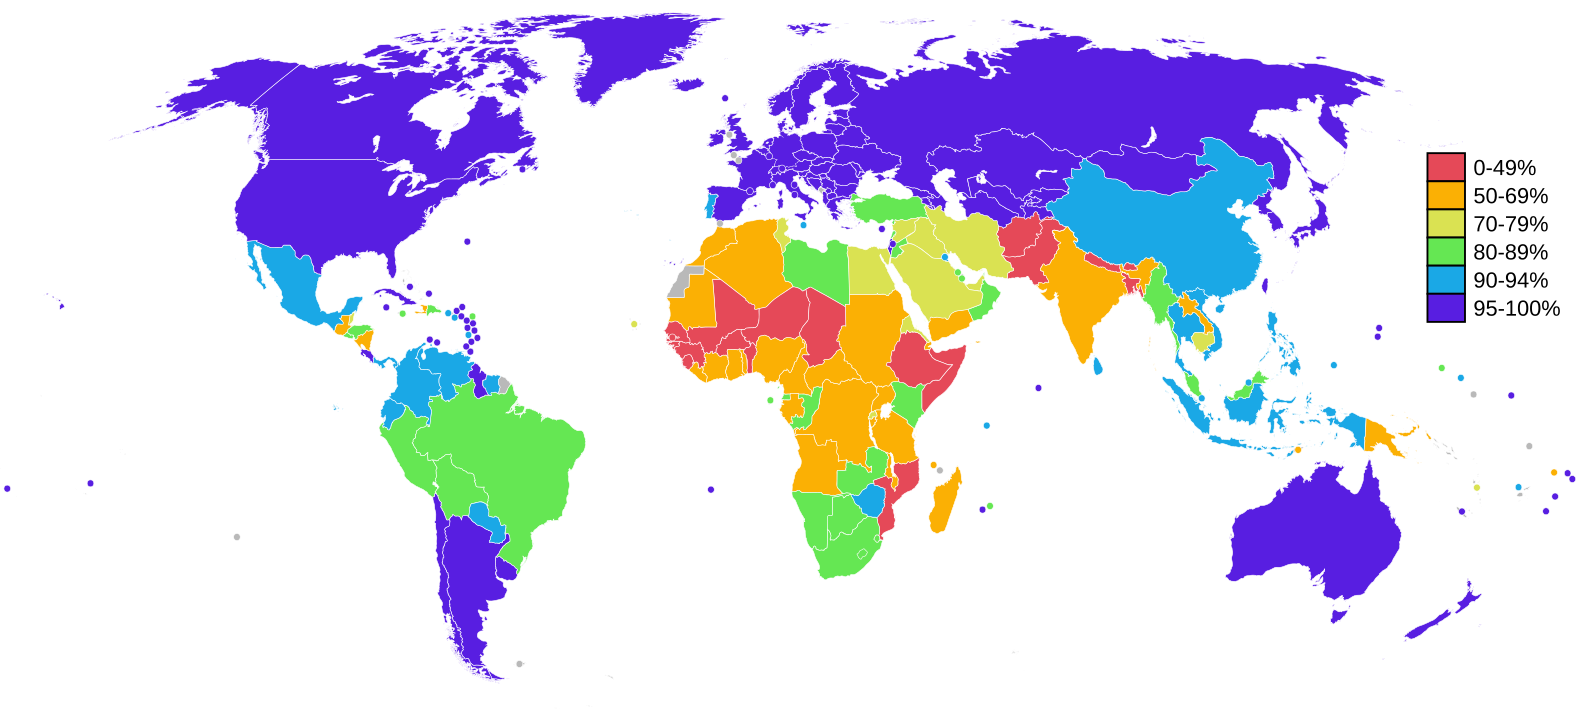 Уровень грамотности. Уровень грамотности населения стран мира. Карта грамотности населения мира. Карта уровня грамотности населения мира. Карта мира по уровню образования.